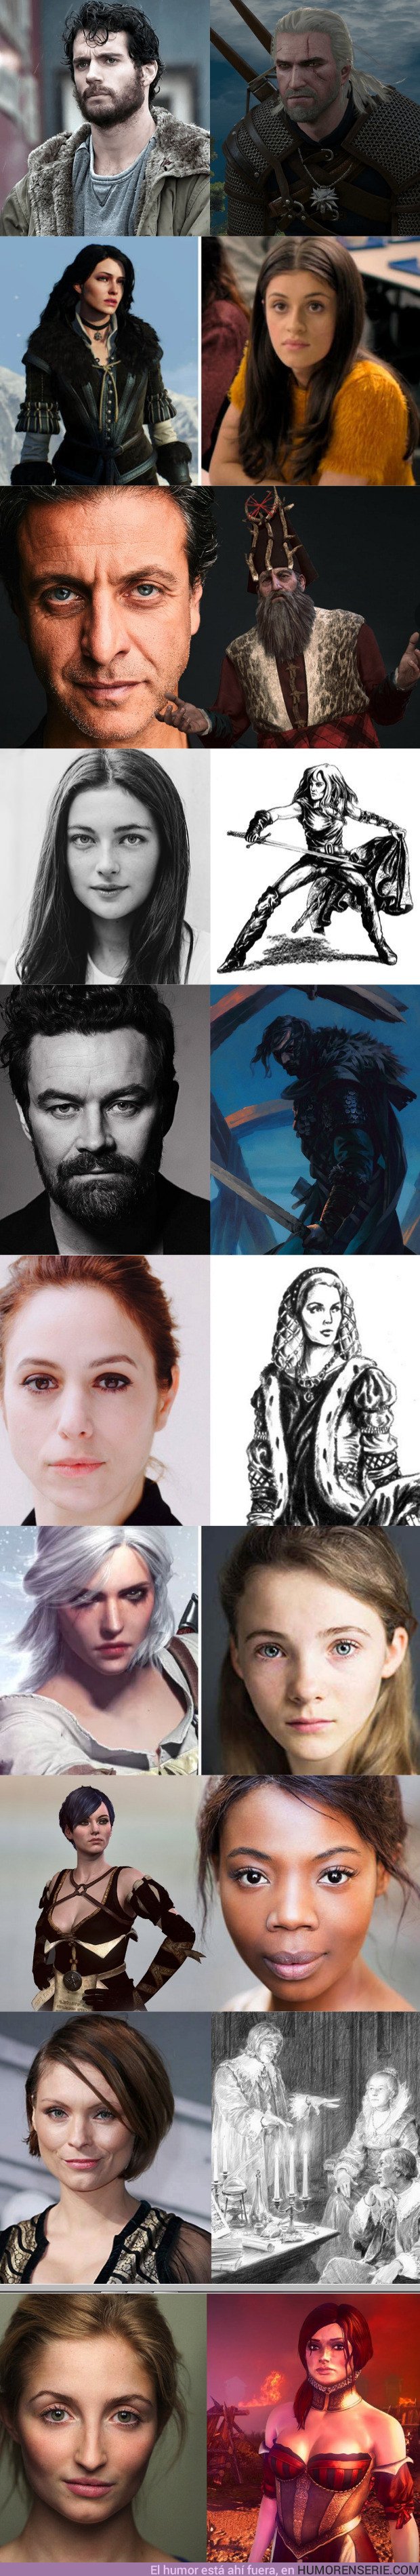 30193 - GALERÍA: Los actores de The Witcher comparados con los personajes del videojuego/libro